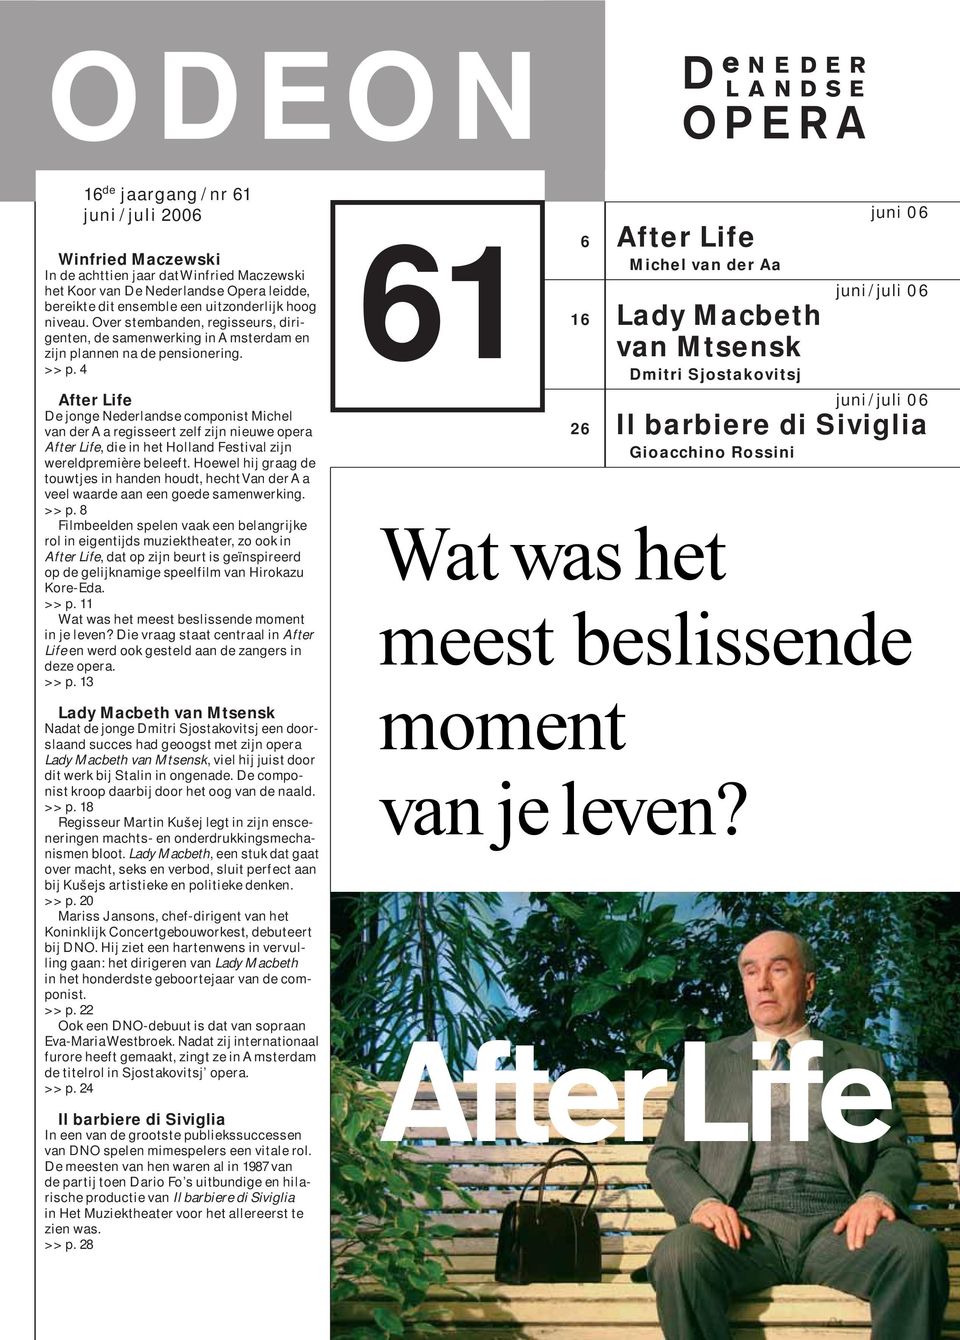 4 After Life De jonge Nederlandse componist Michel van der Aa regisseert zelf zijn nieuwe opera After Life, die in het Holland Festival zijn wereldpremière beleeft.